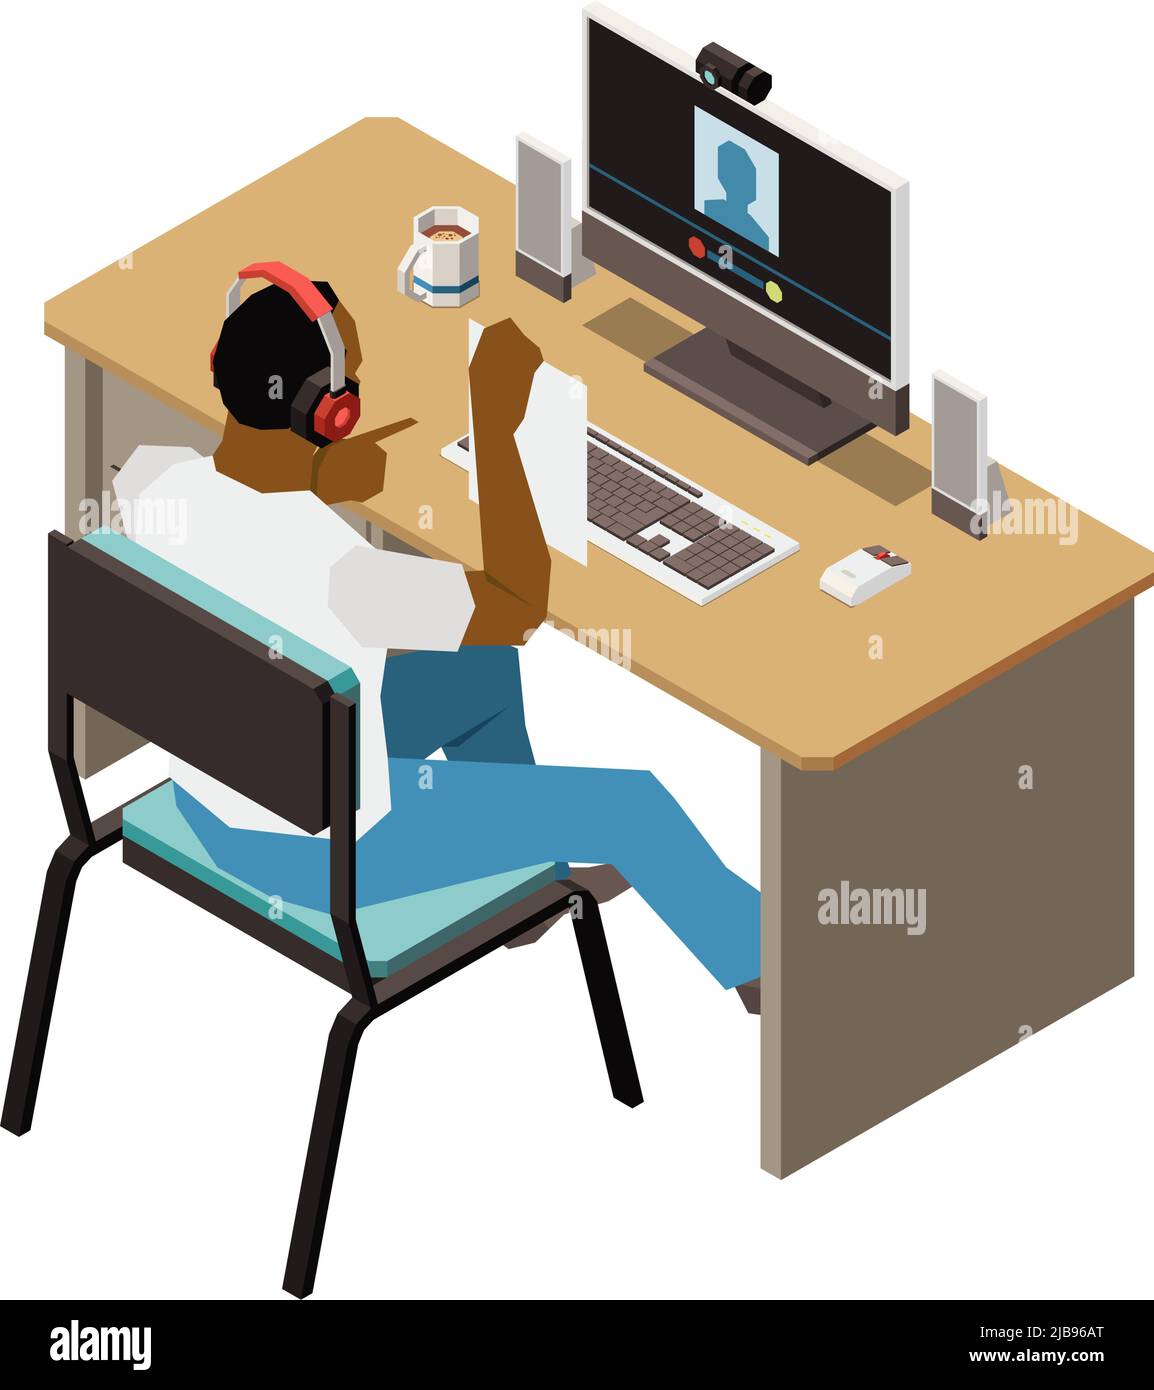 Discussion de personnes composition isométrique avec un homme assis à la table d'ordinateur montrant le papier à l'illustration de vecteur de webcam Illustration de Vecteur